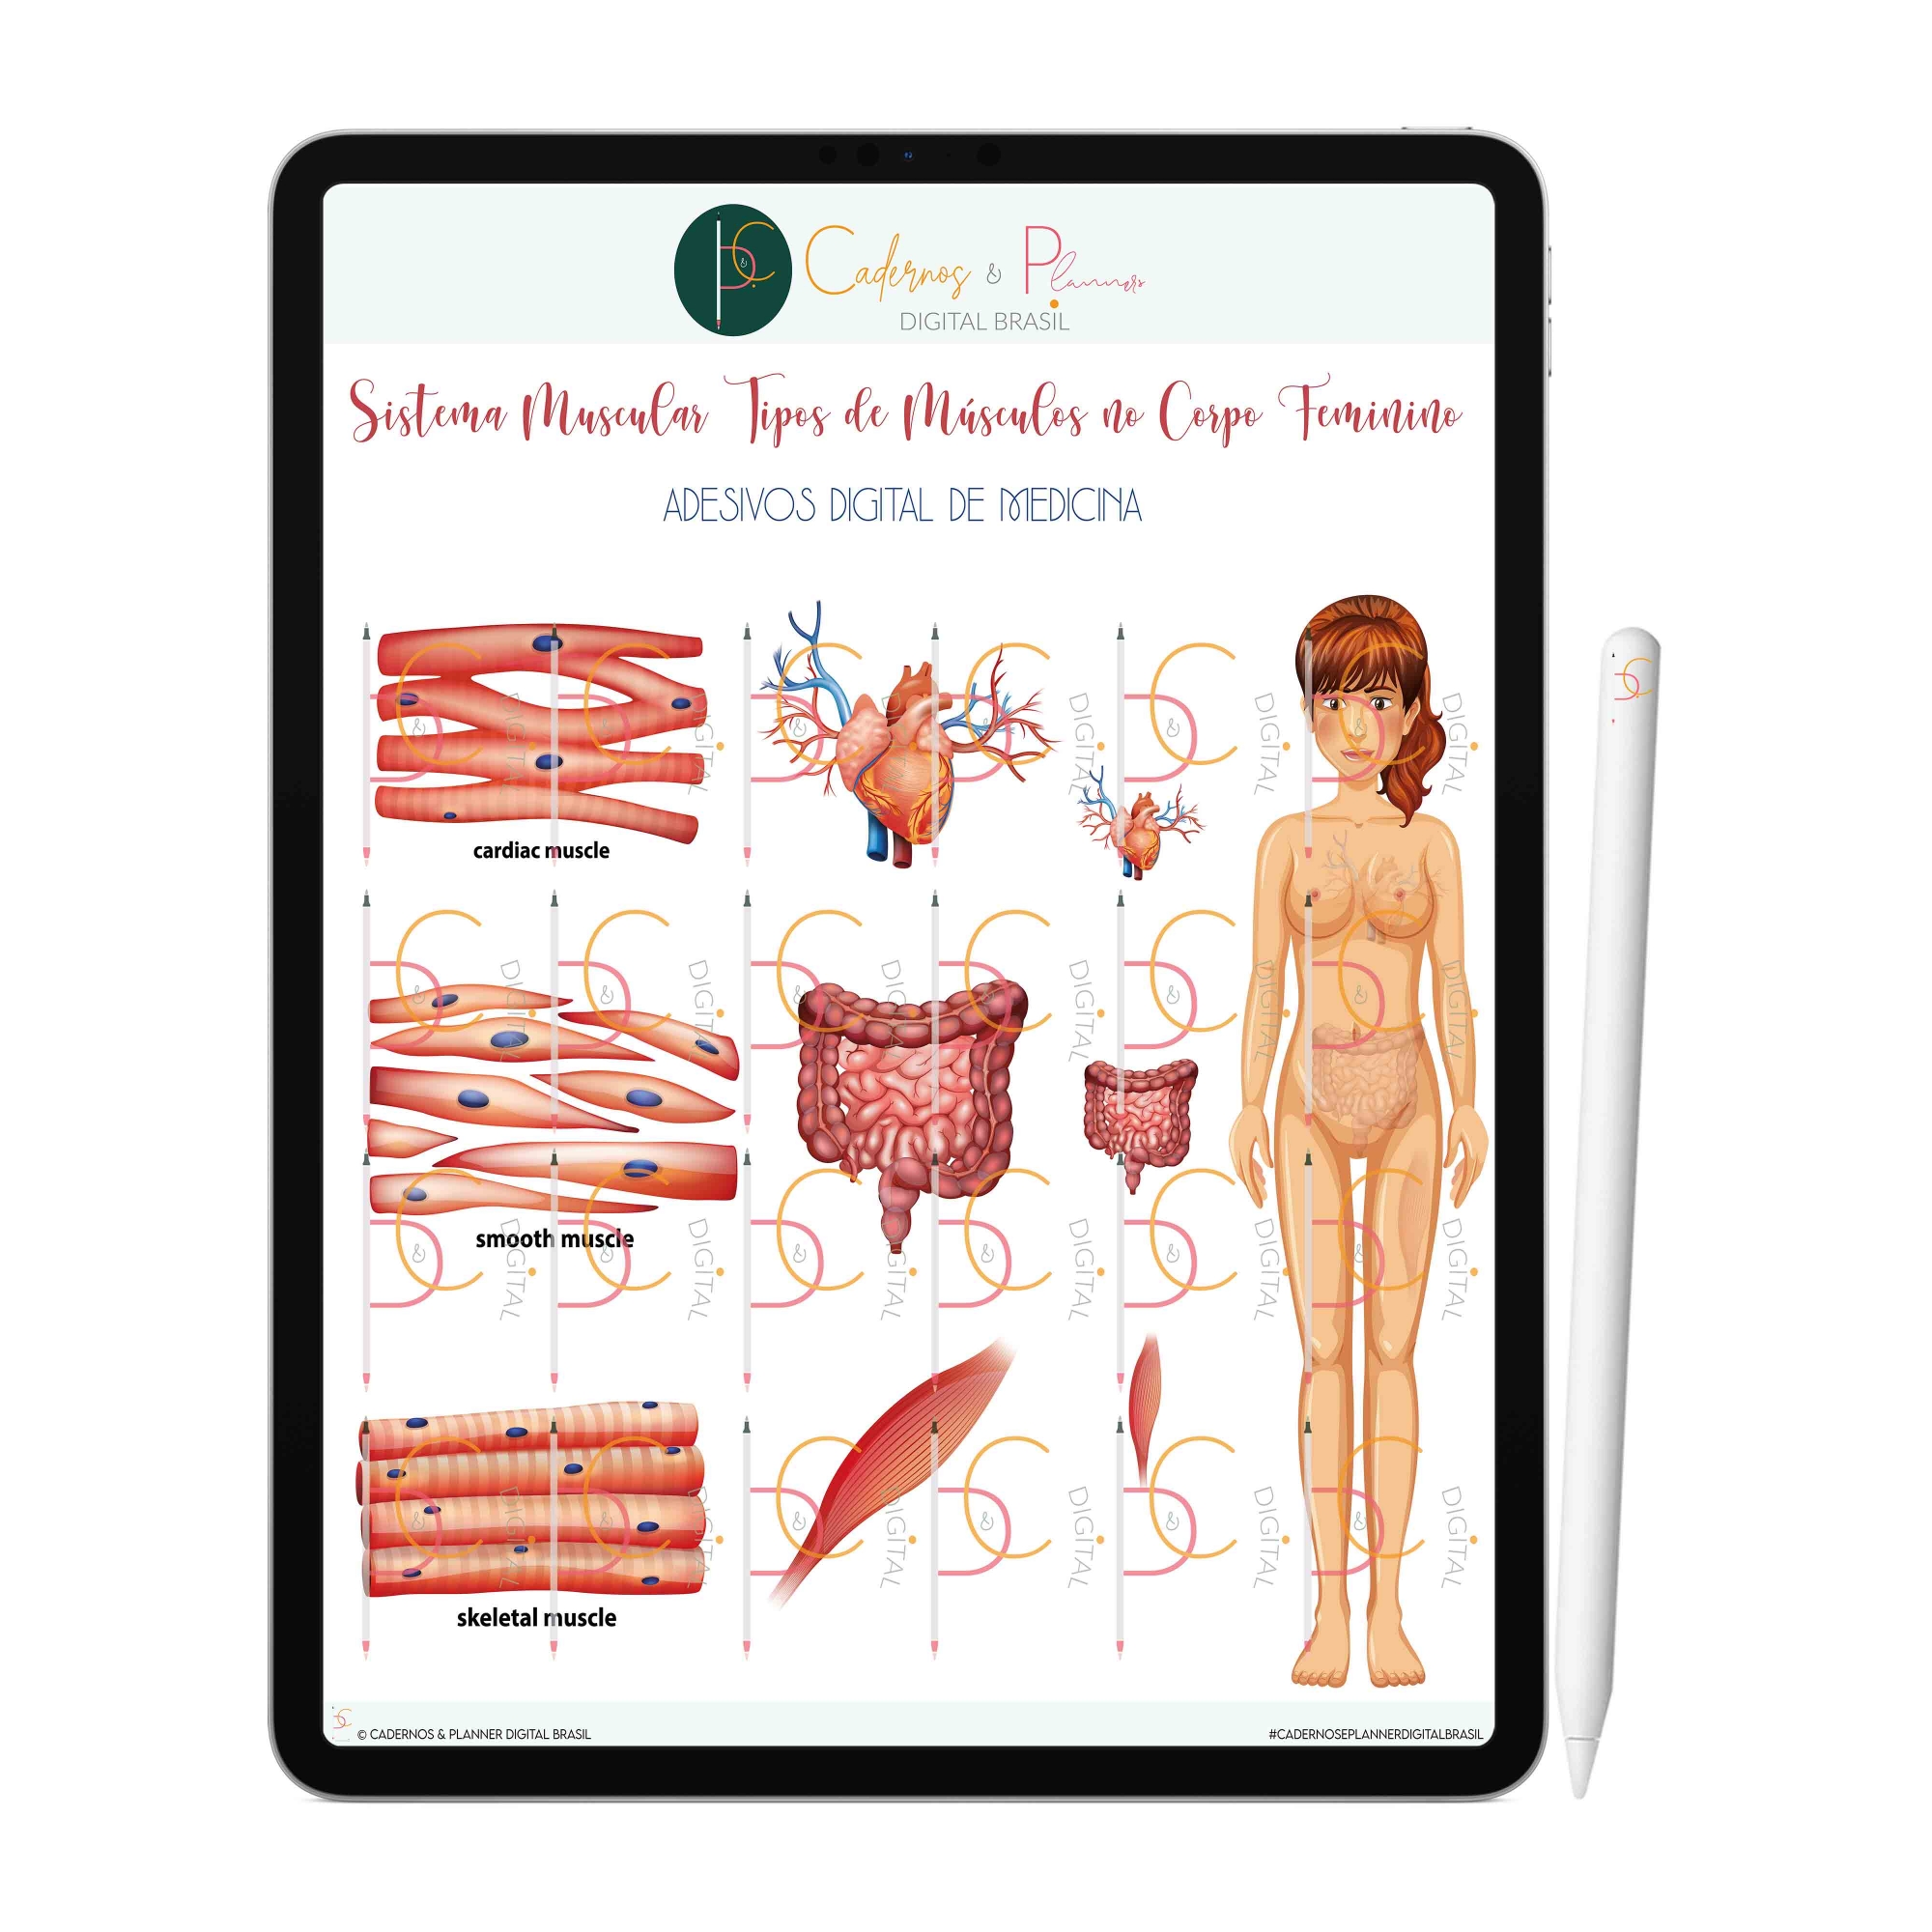 Adesivos Digital de Medicina - Sistema Muscular Tipos de Músculos no Corpo Feminino | iPad Tablet | Download Instantâneo